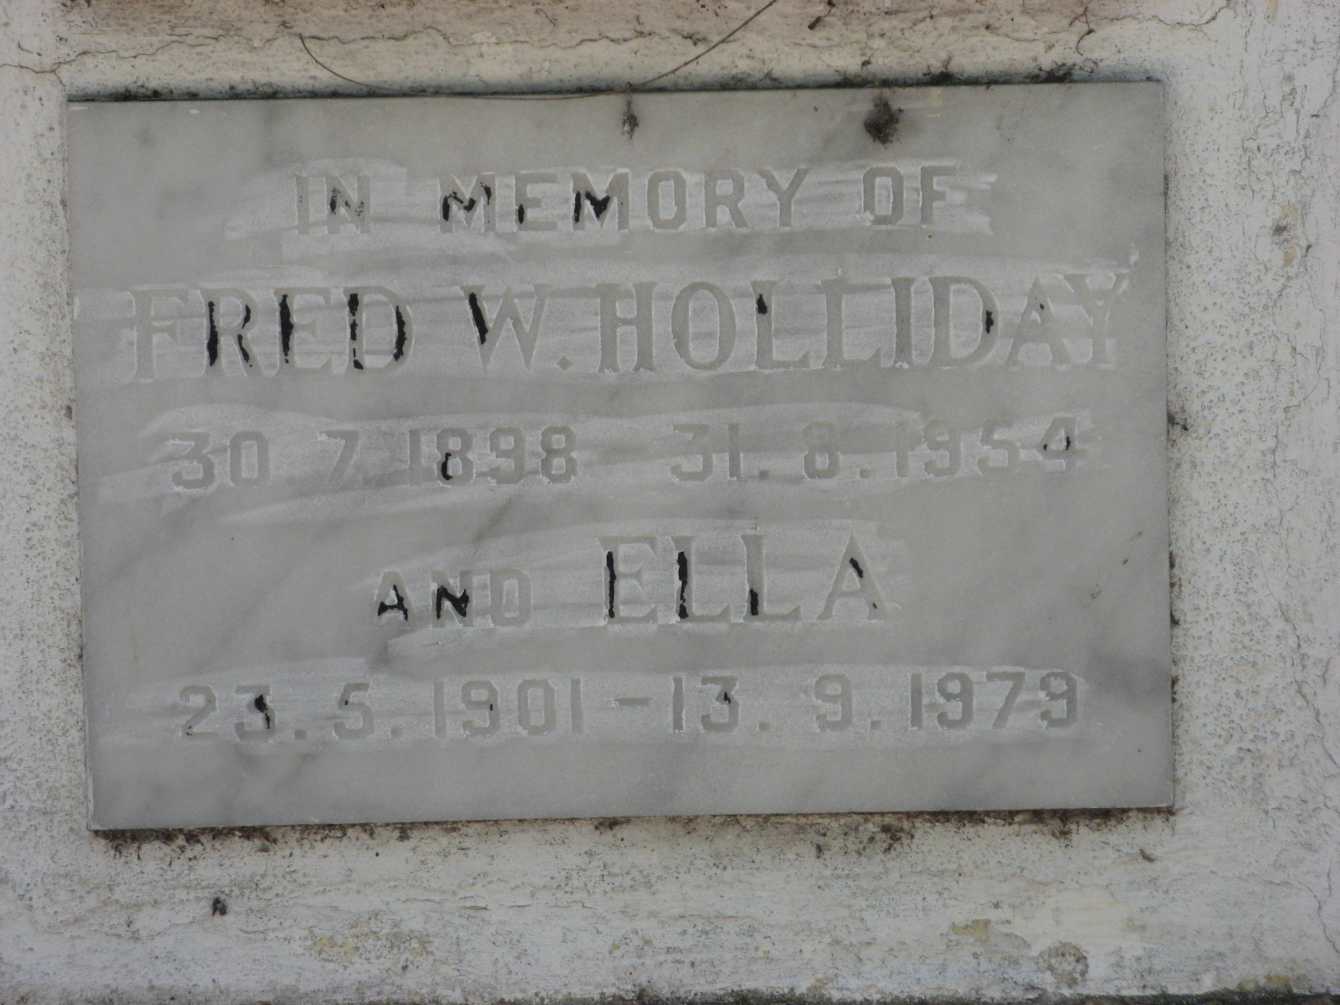 HOLIDAY Fred W. 1898-1954 & Ella 1901-1979